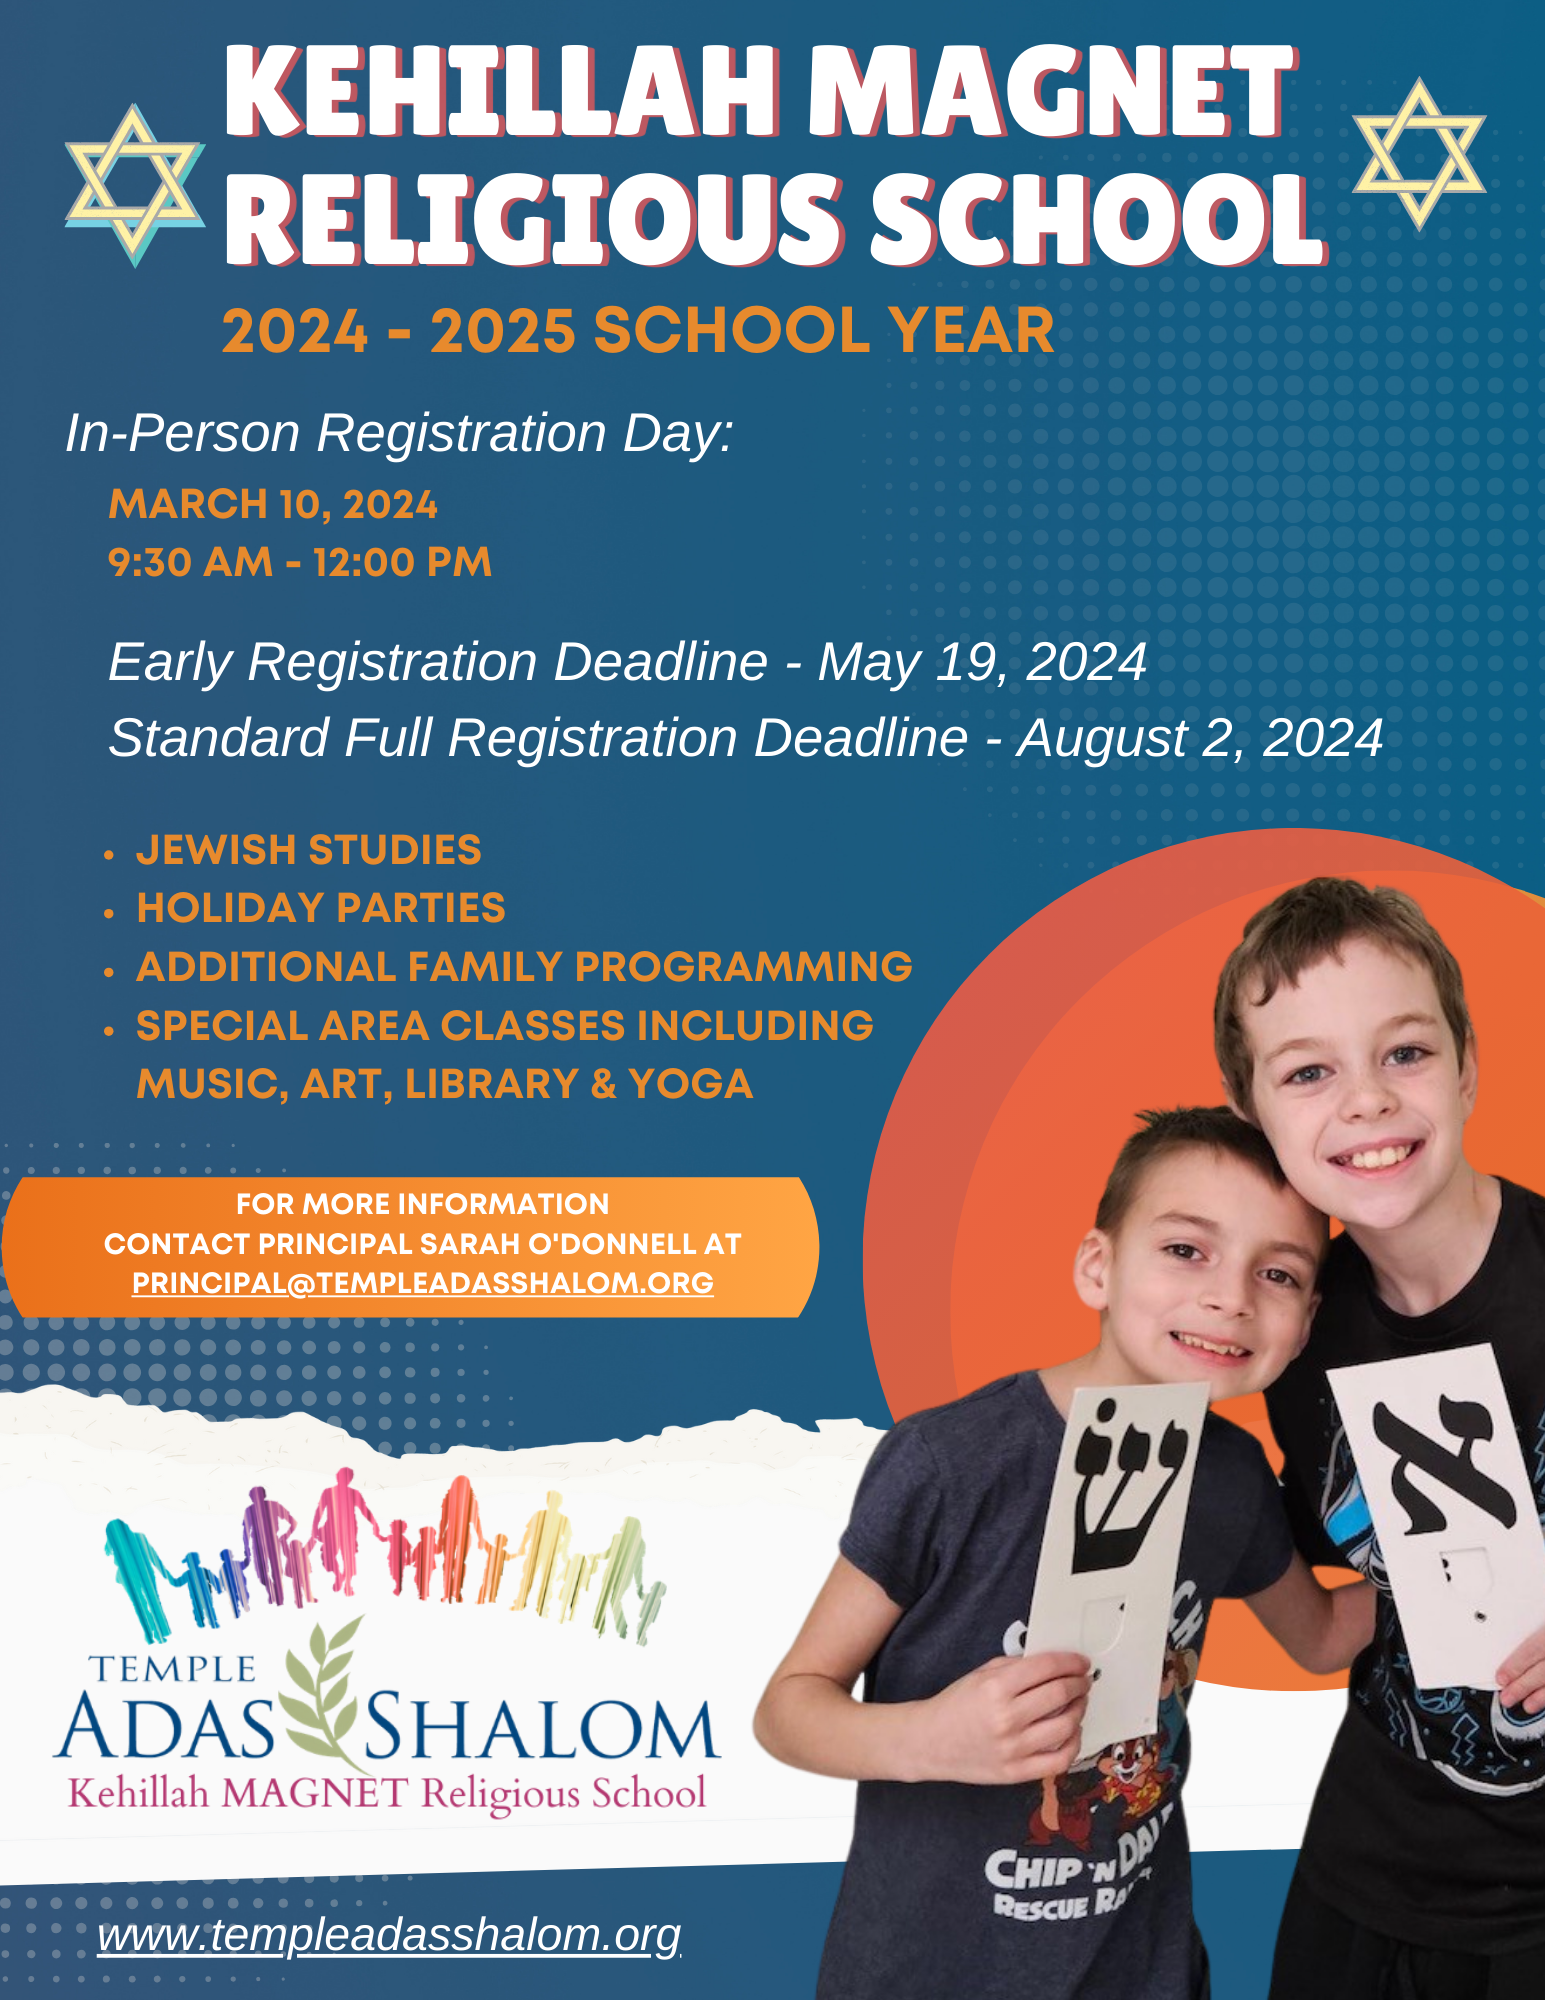 Kehillah MAGNET Religious School registration